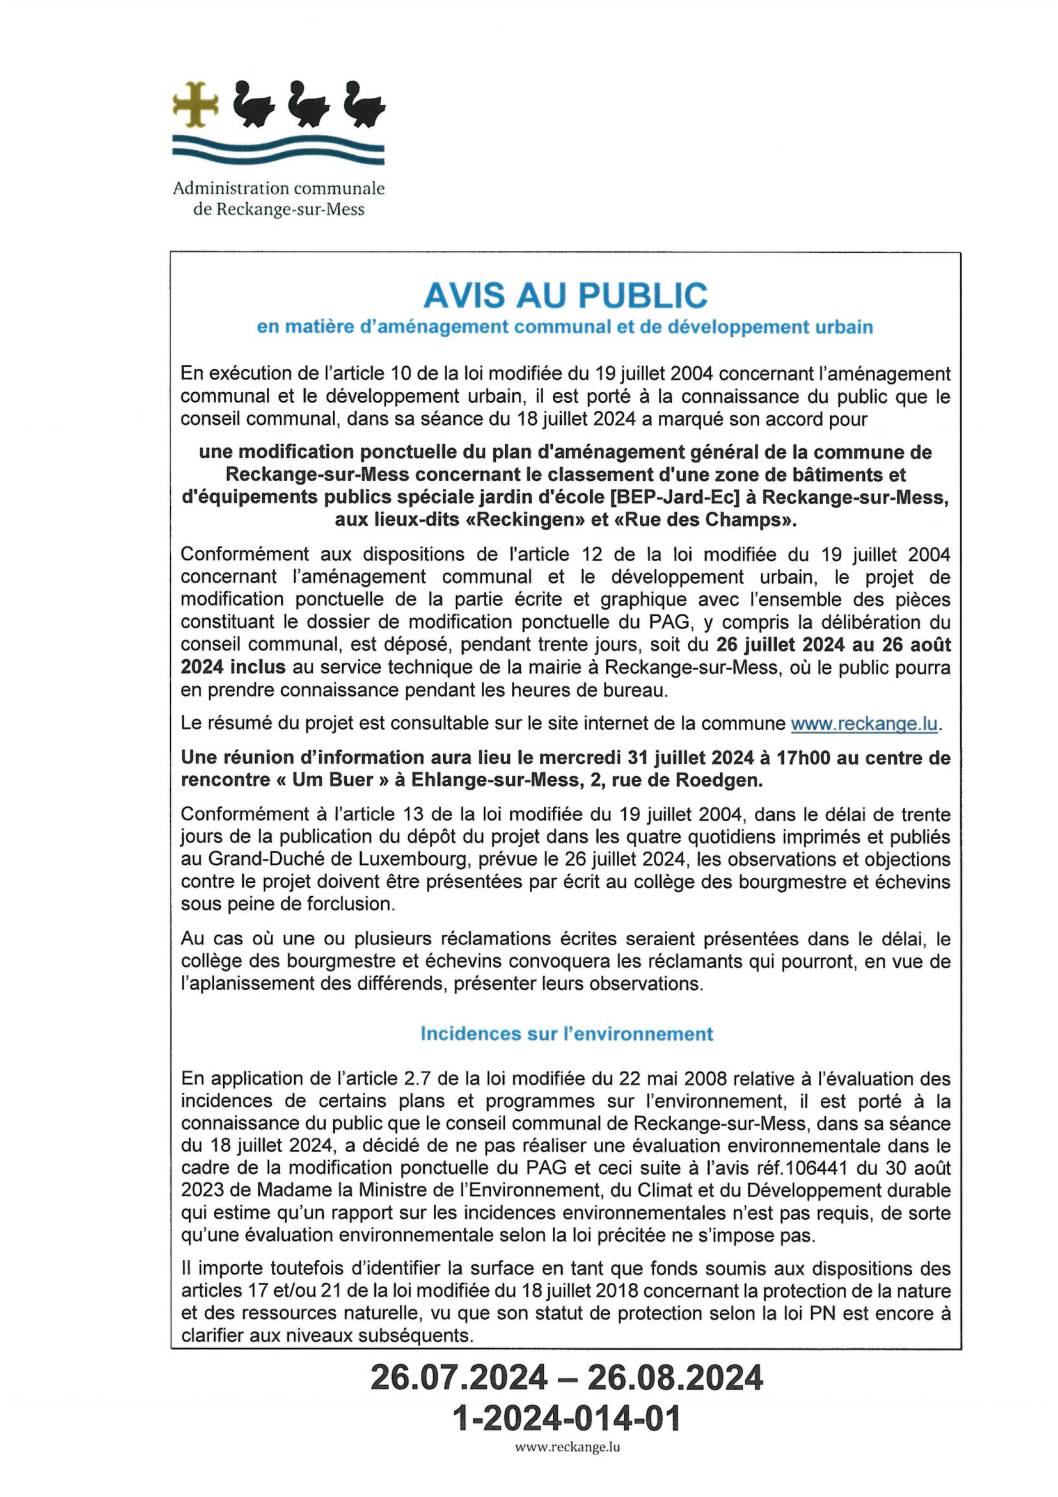 AVIS AU PUBLIC - MoPo 195 PAG "BEP-Jard-Ec" à Reckange-sur-Mess & dispense SUP